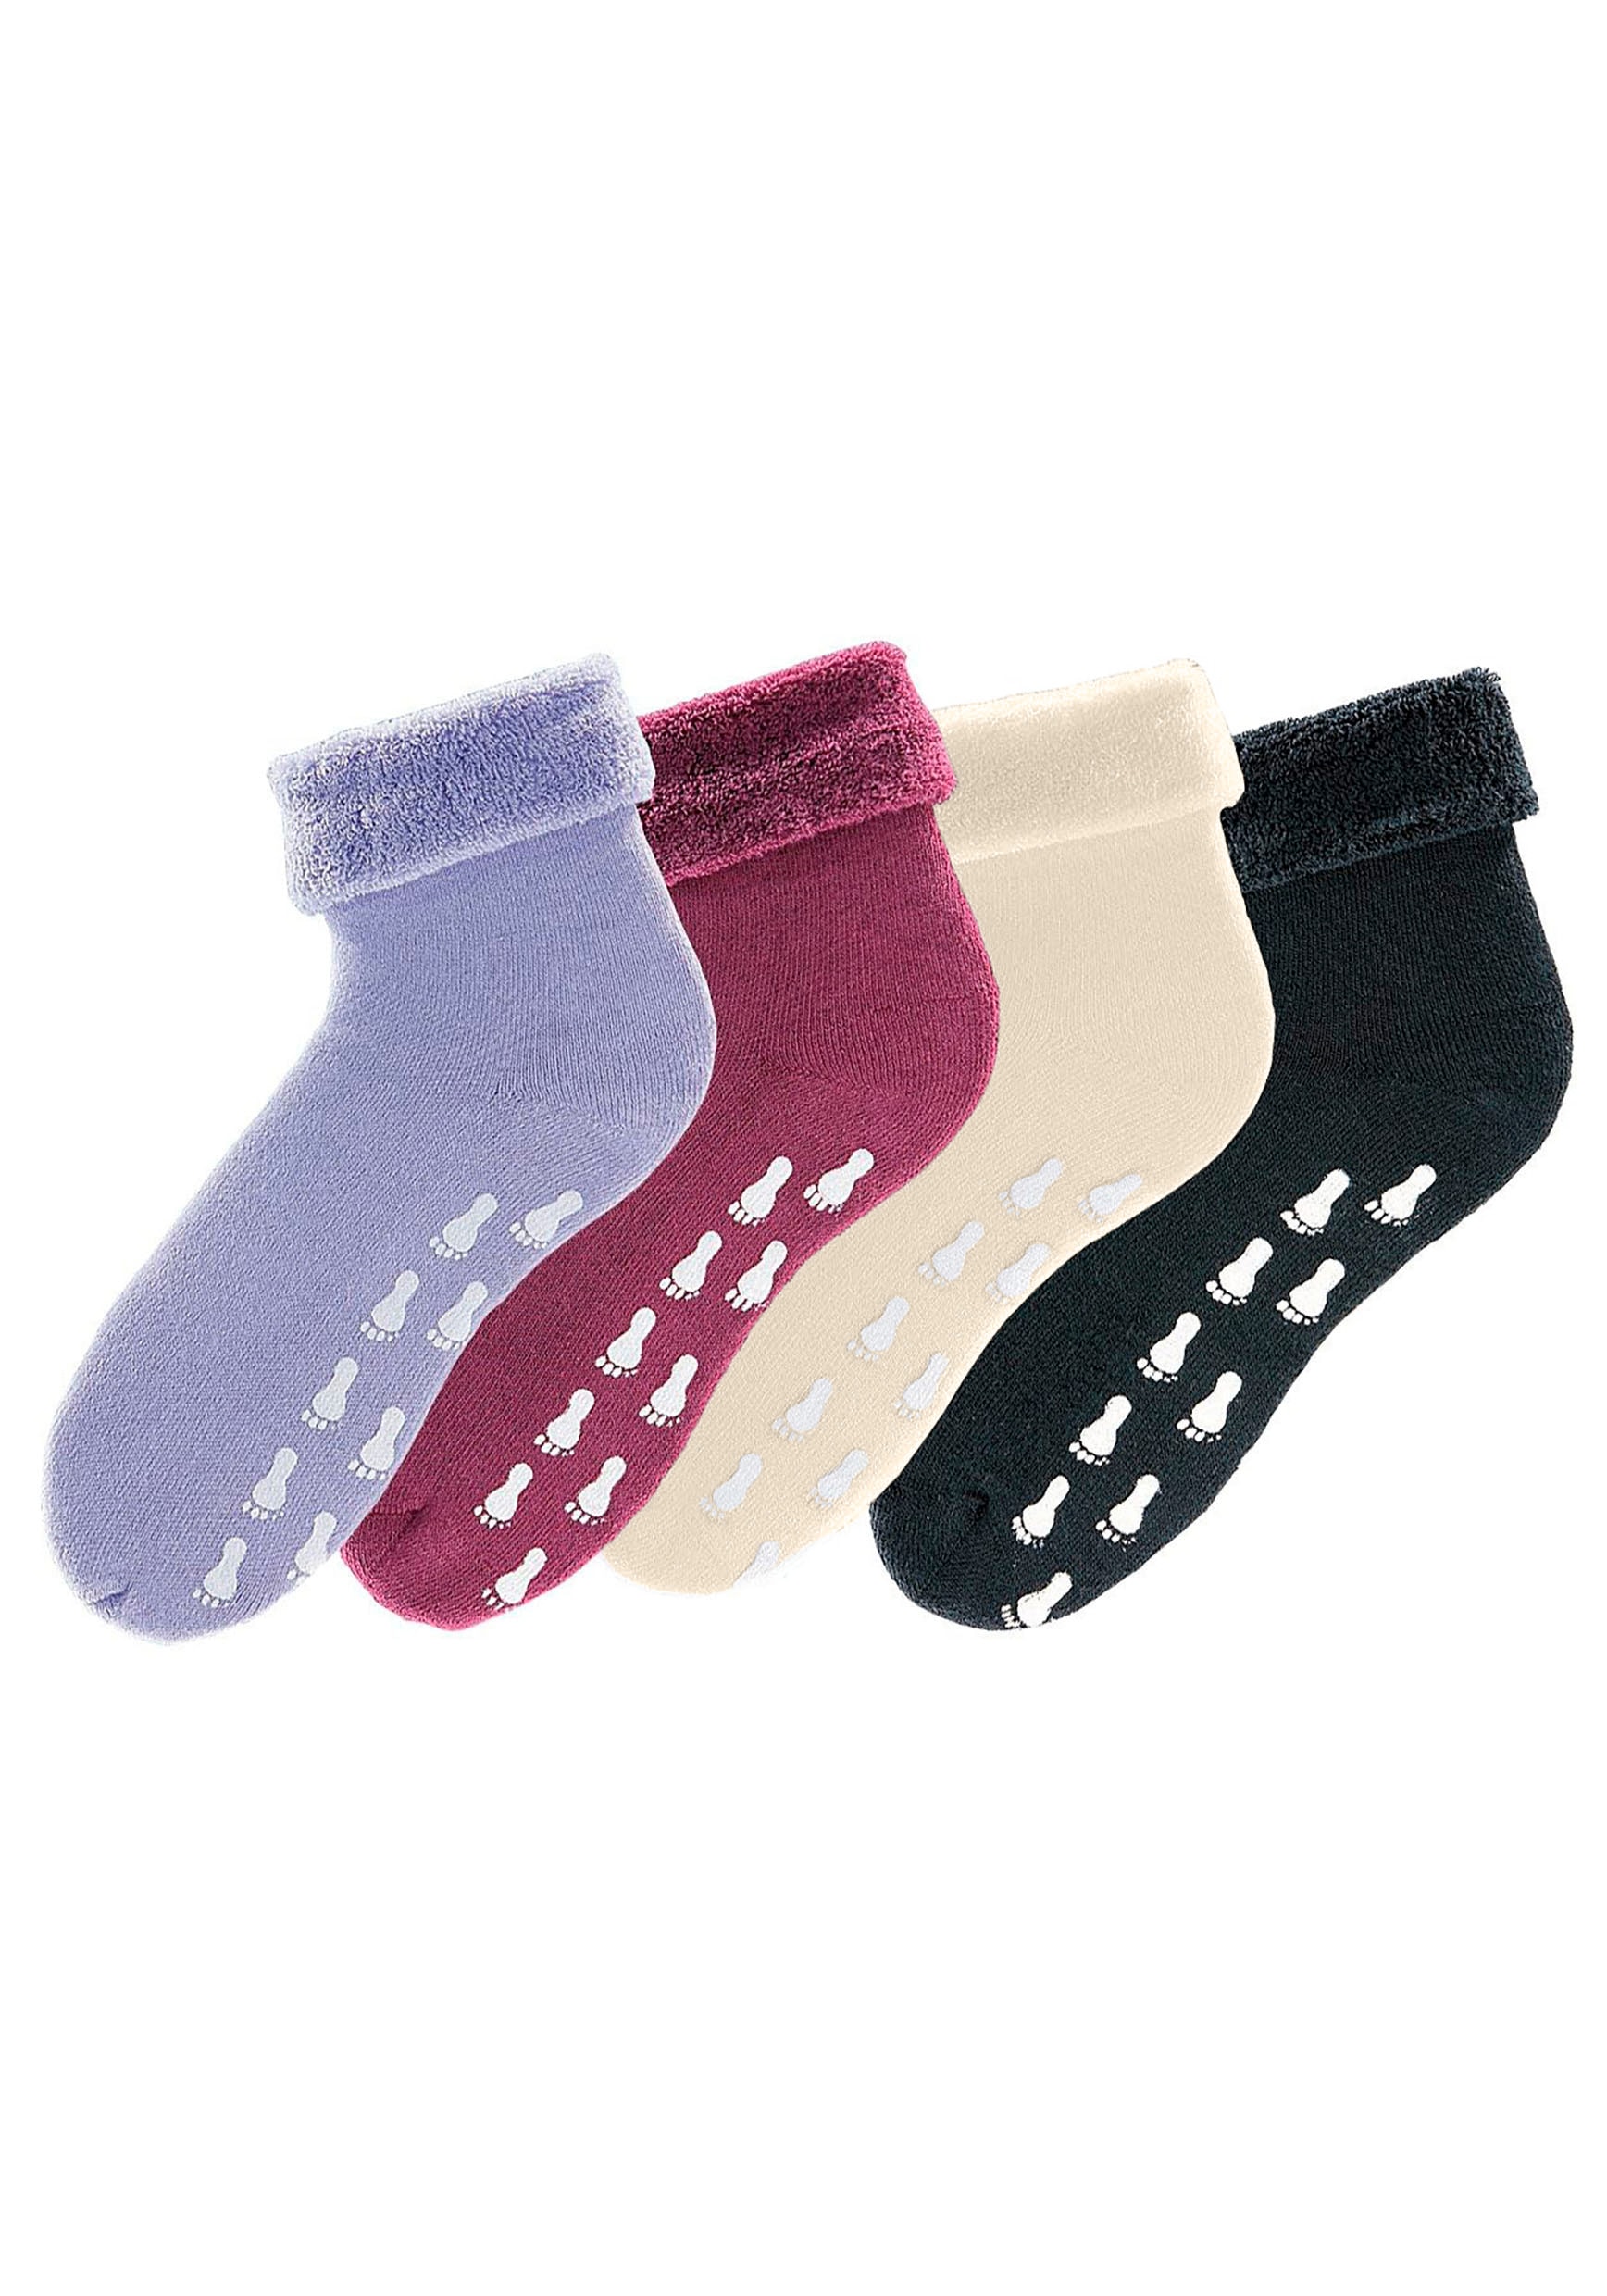 Go in ABS-Socken, (Packung, 4 Paar), mit Antirutschsohle und Vollfrottee